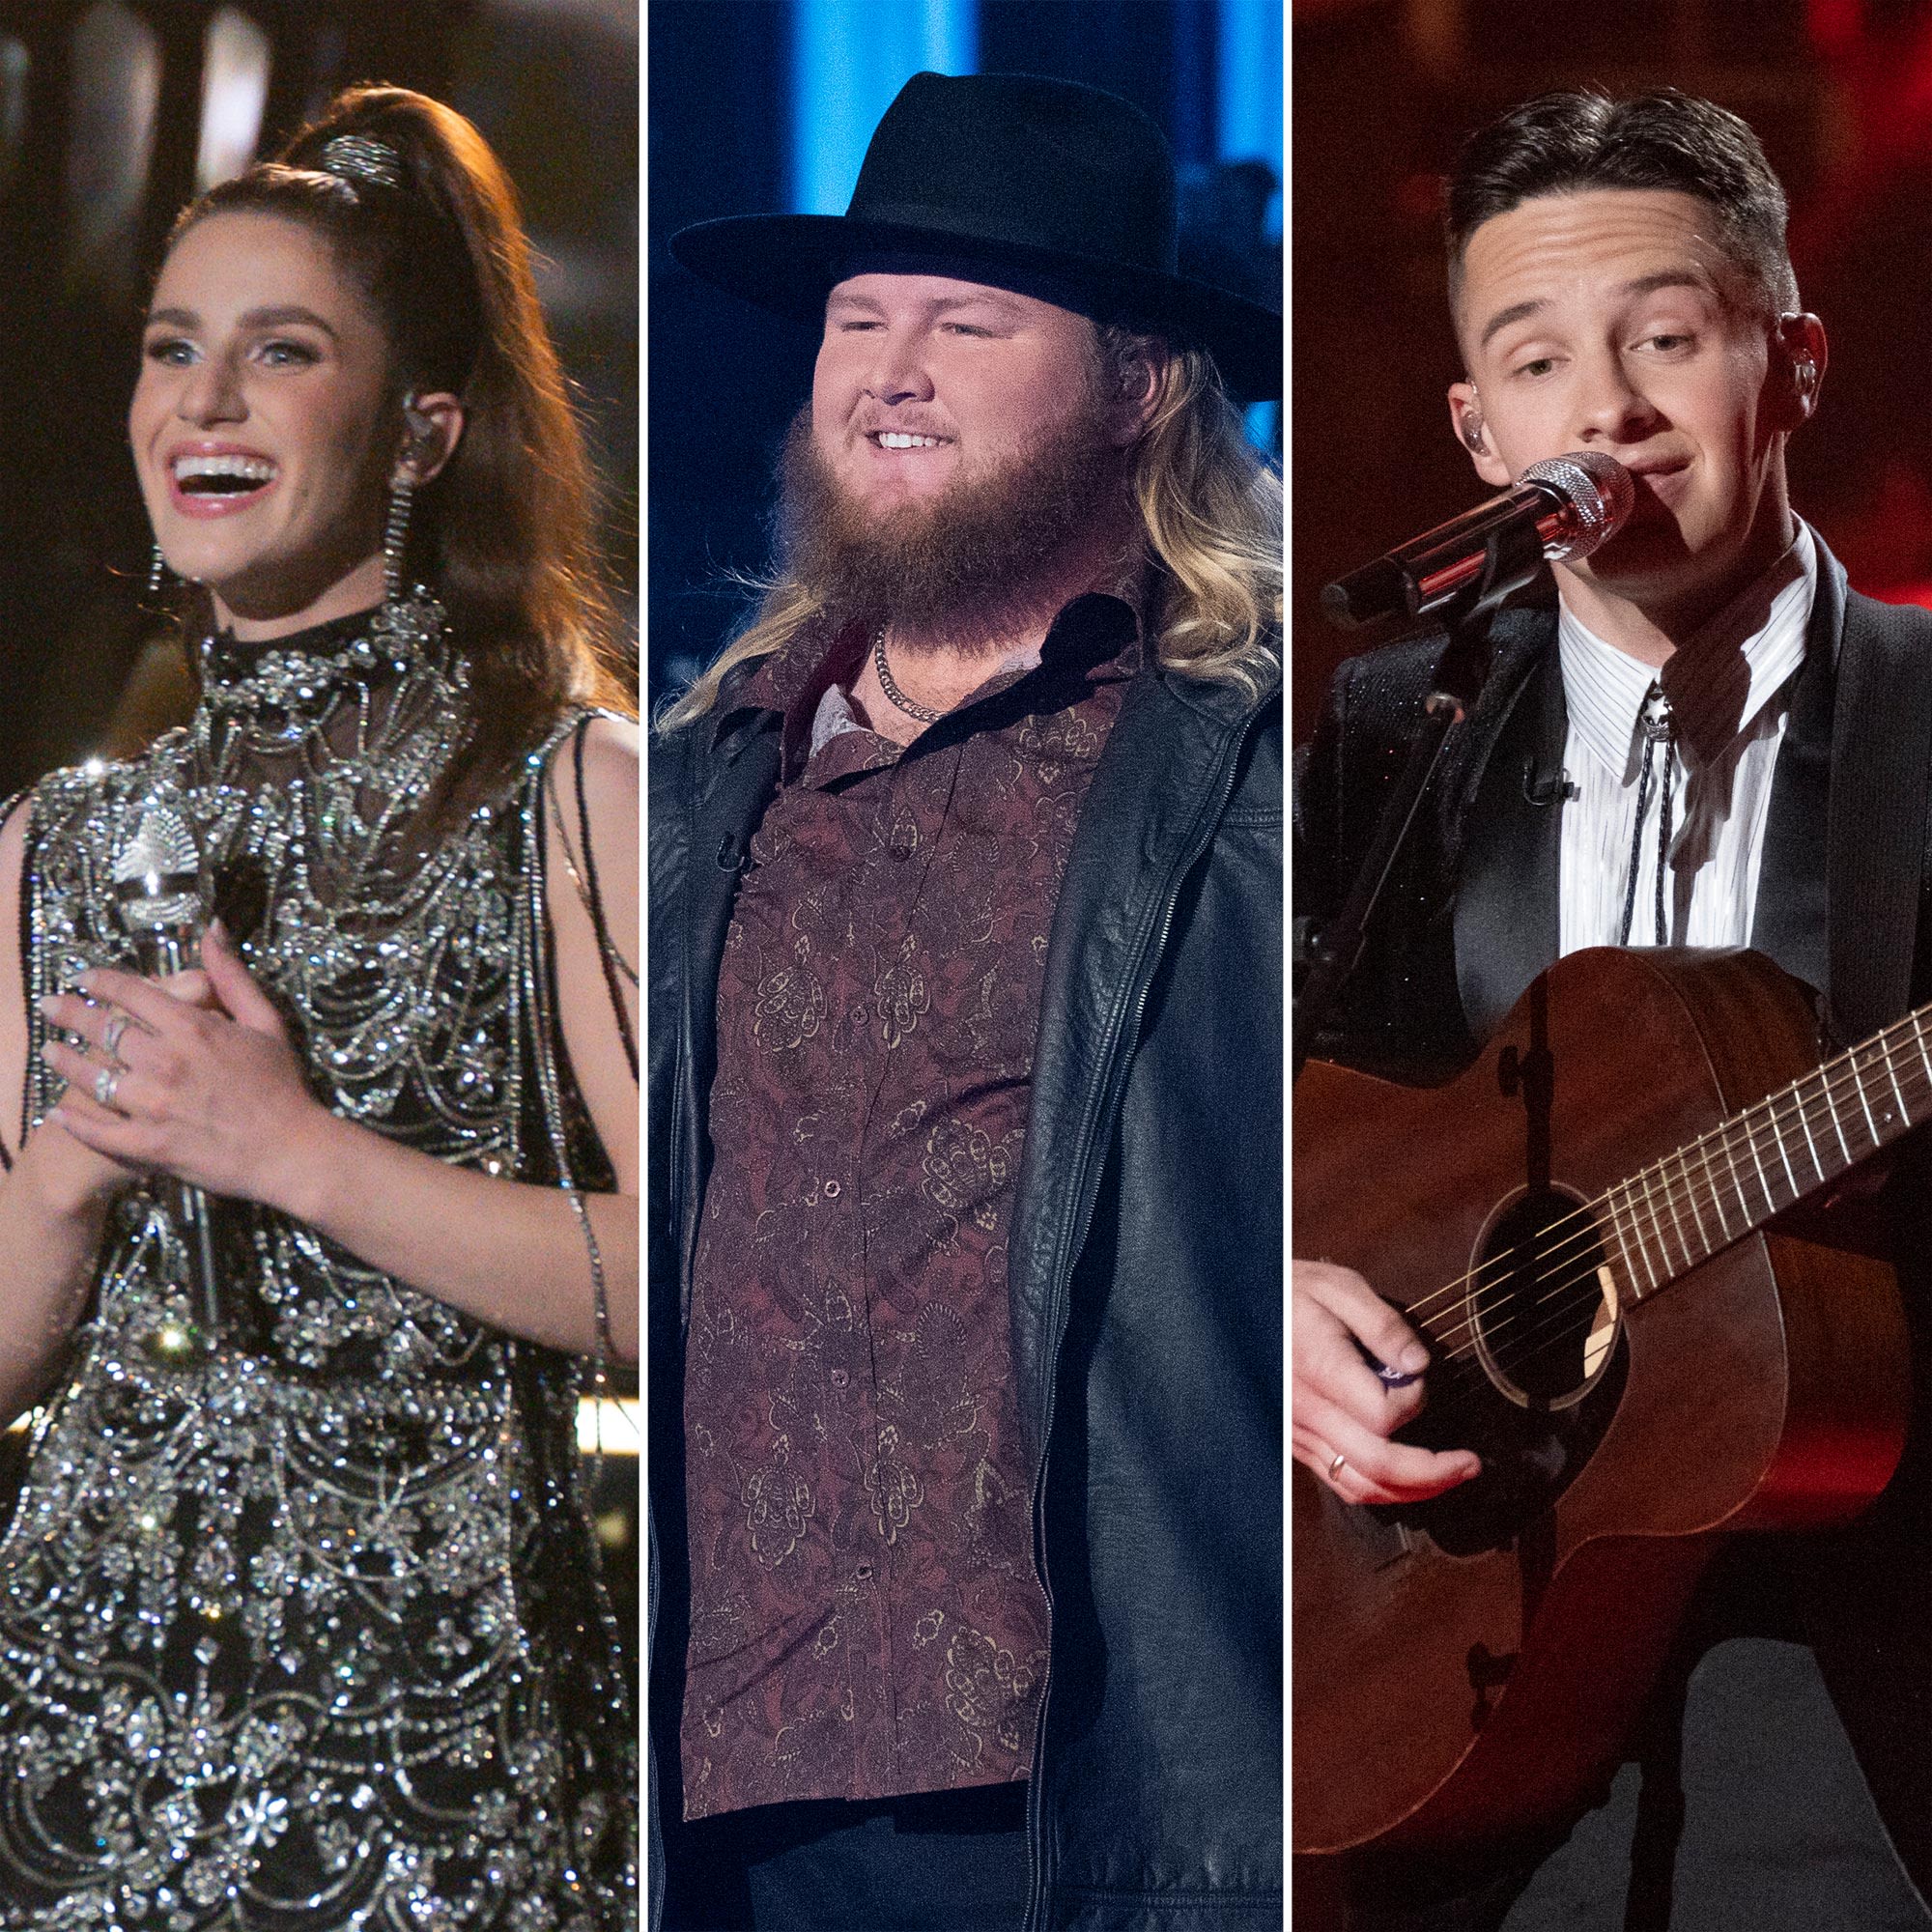 Meet 'American Idol' Season 22's Top 3 Singers Ahead of the Finale